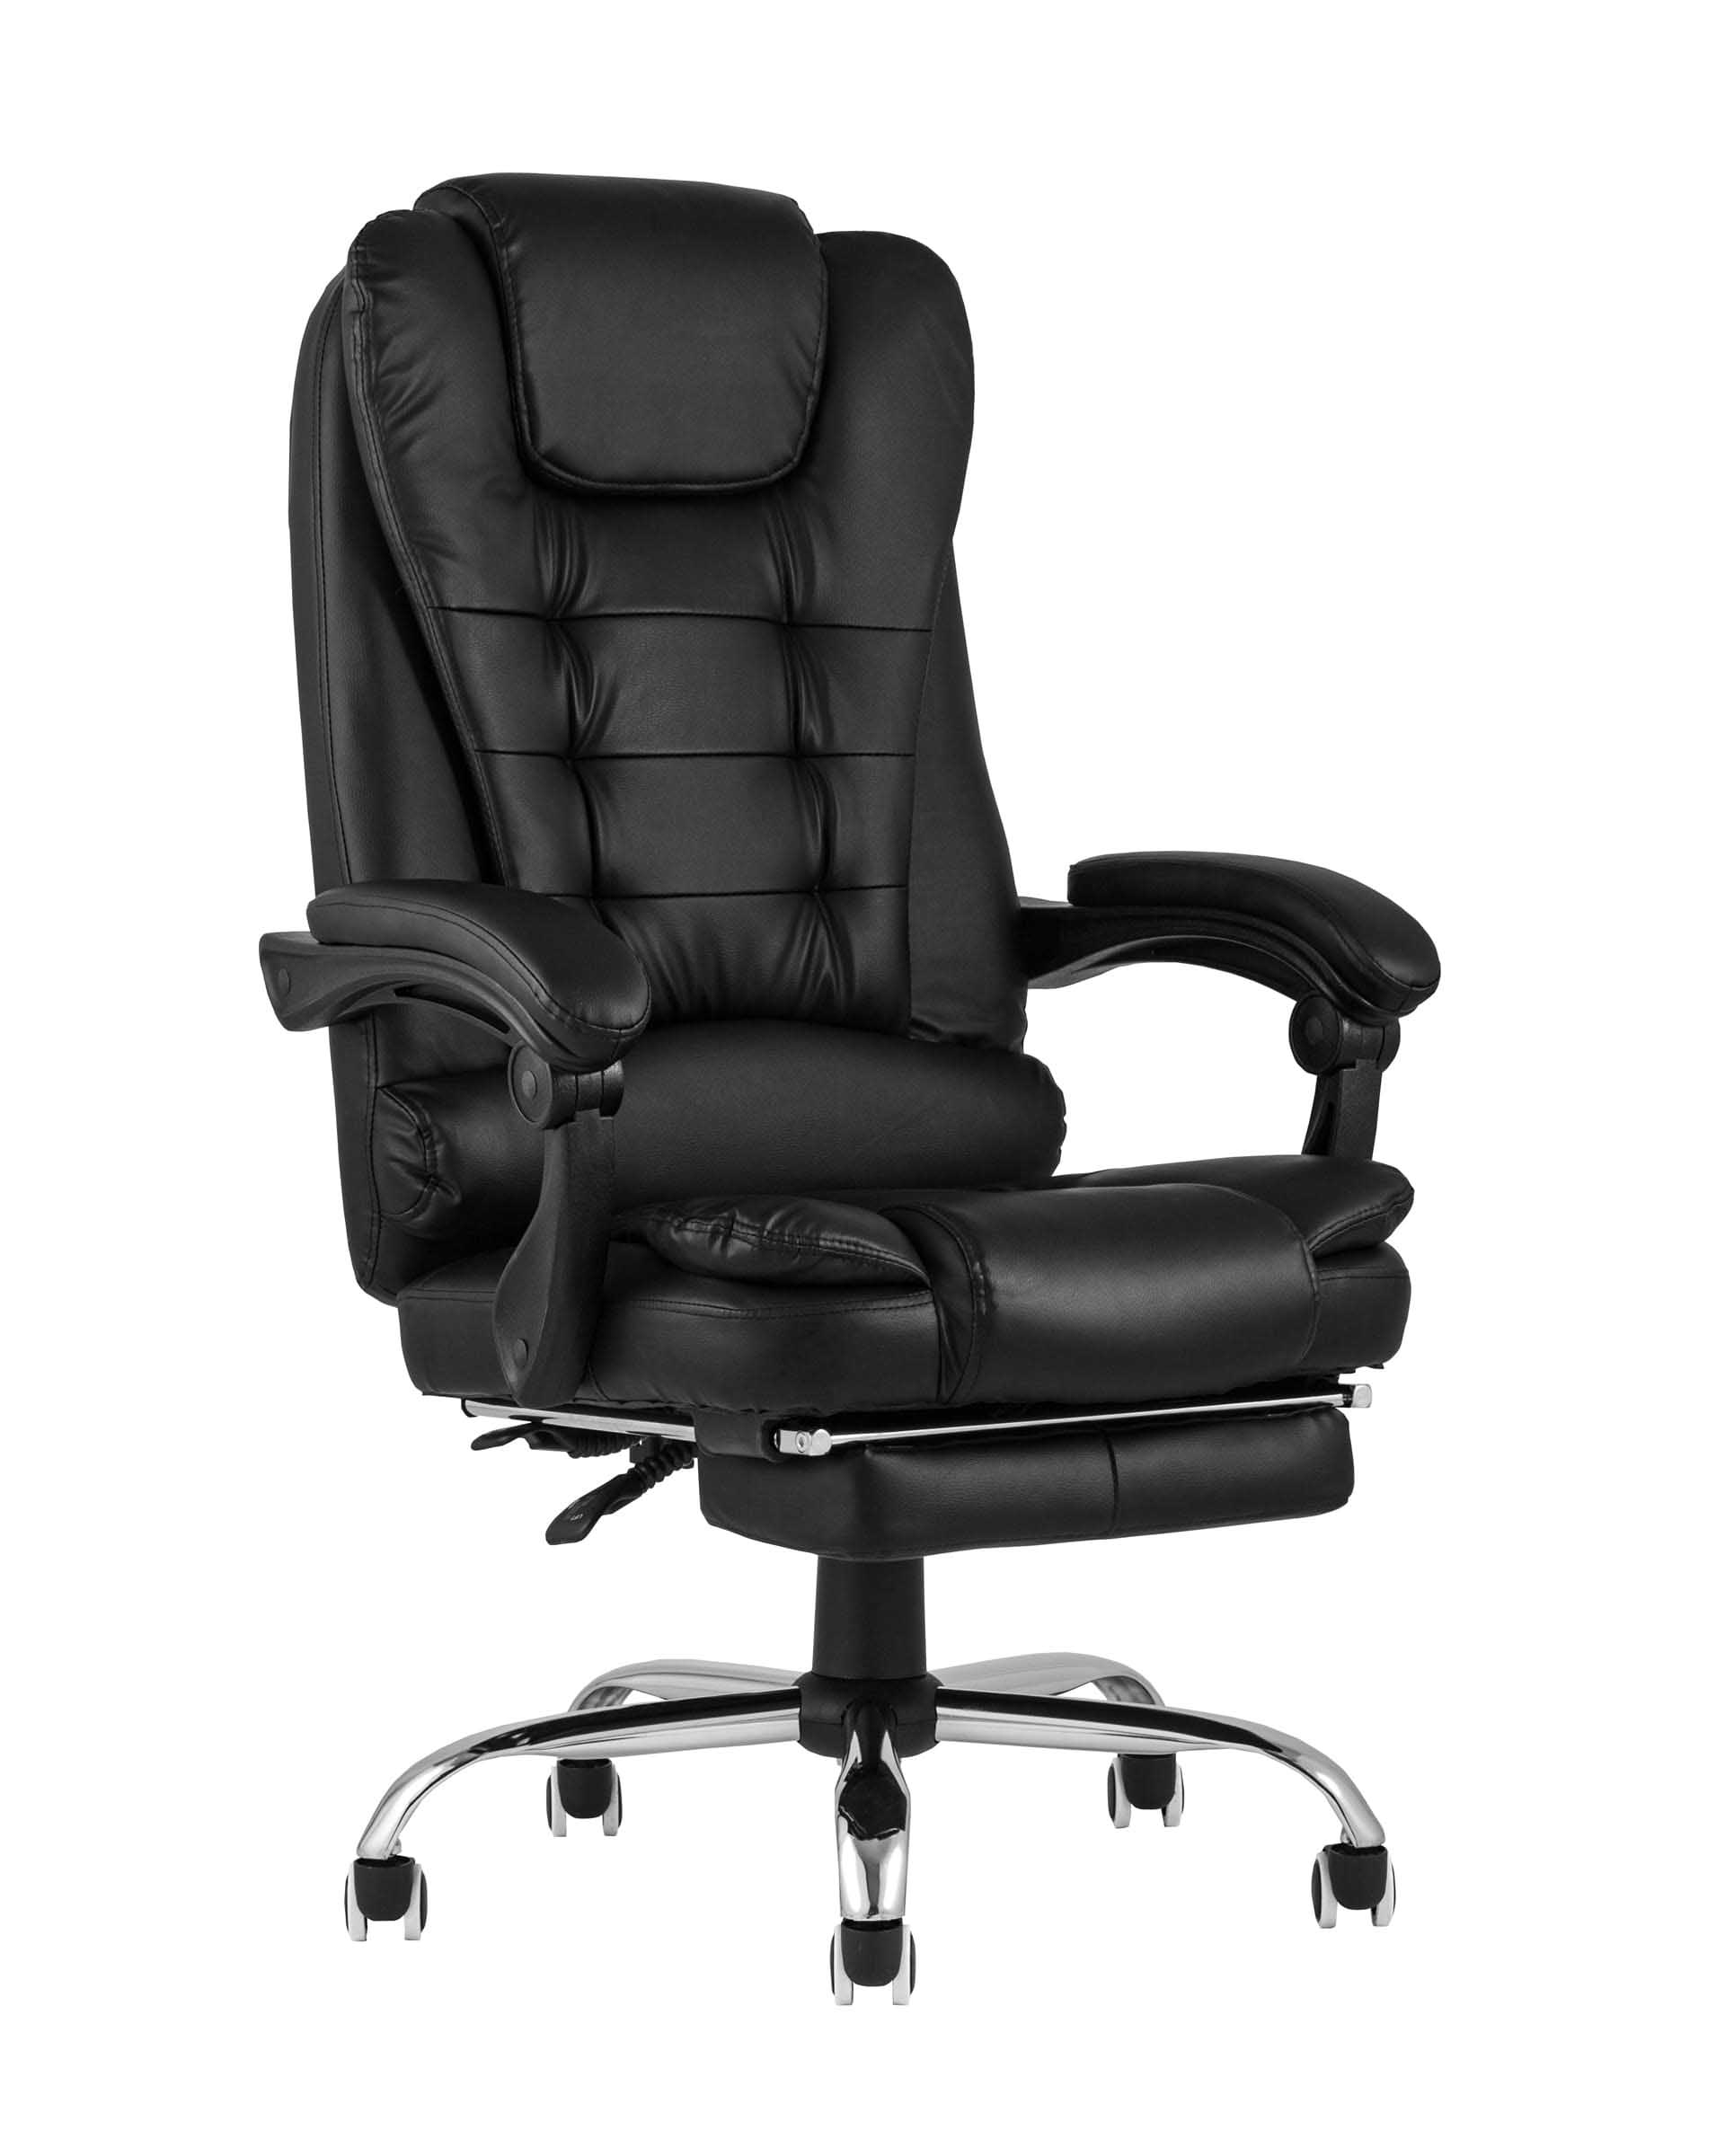 Компьютерное кресло TopChairs President офисное черное в обивке из экокожи, механизм качания и регулировки по высоте